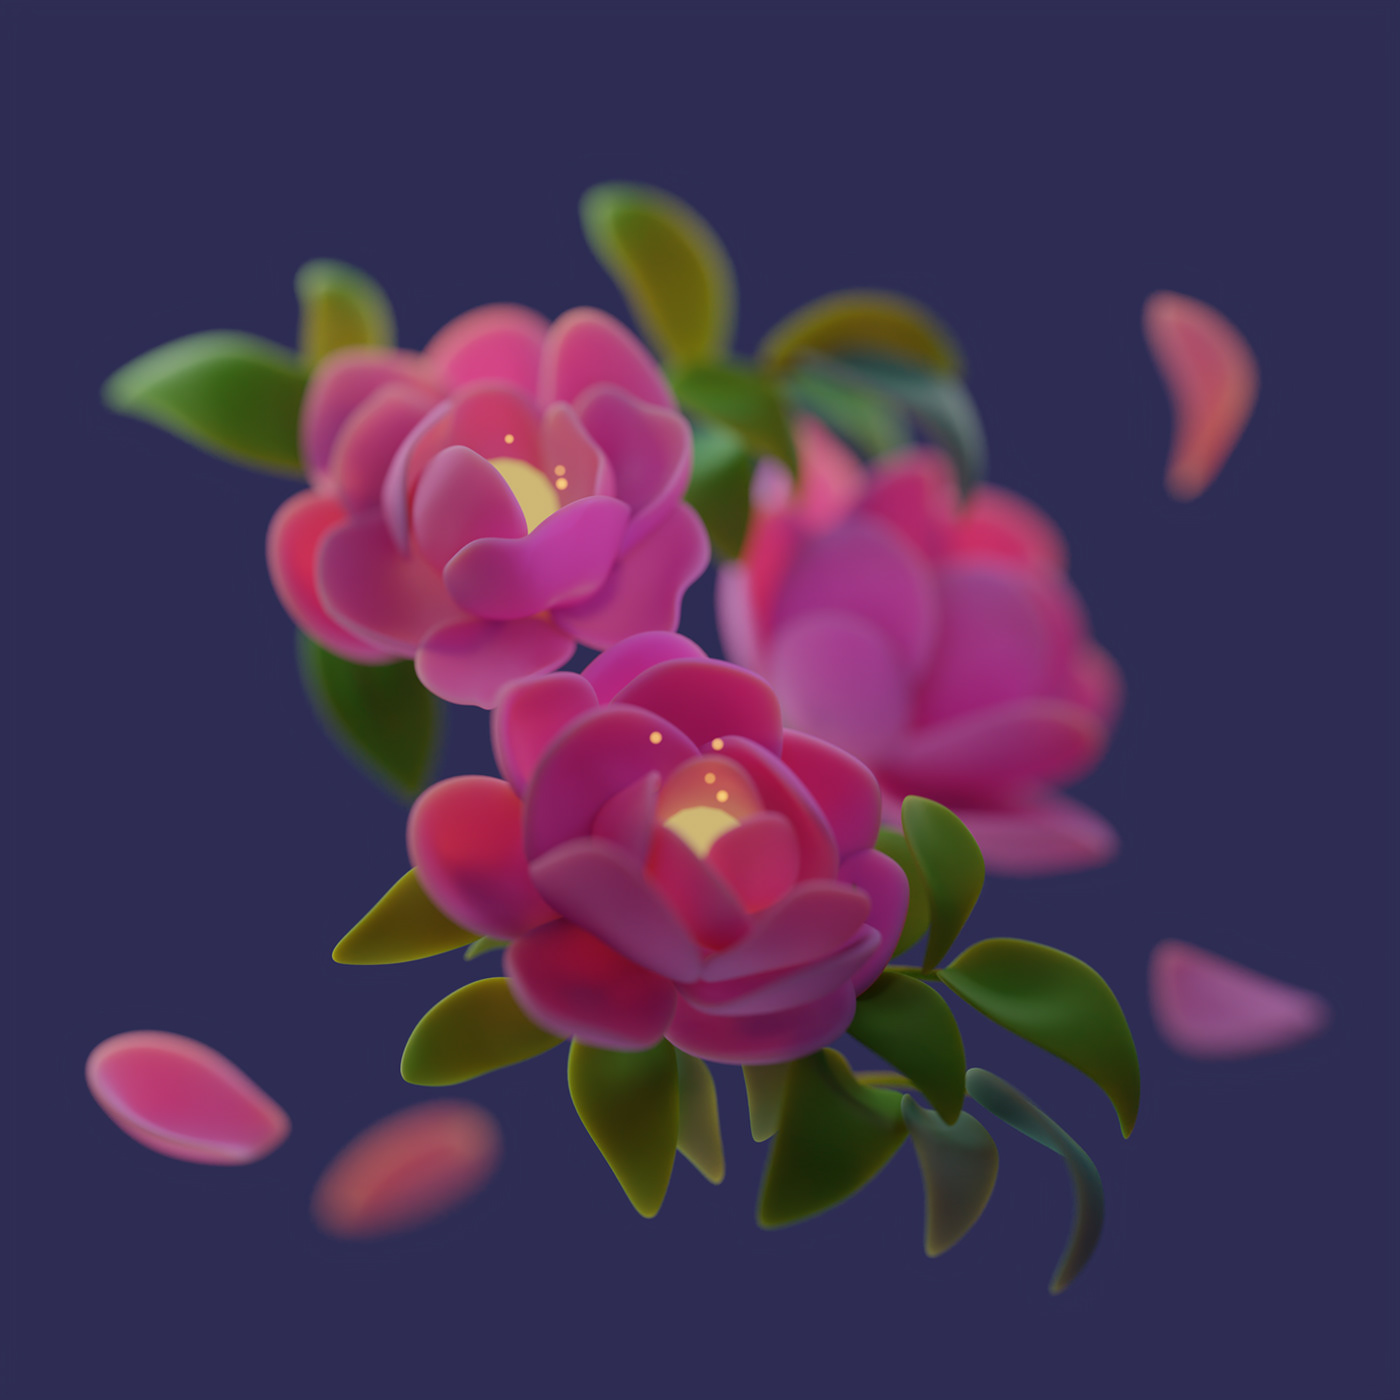 Flowers 3D flower peony pink cute peonies